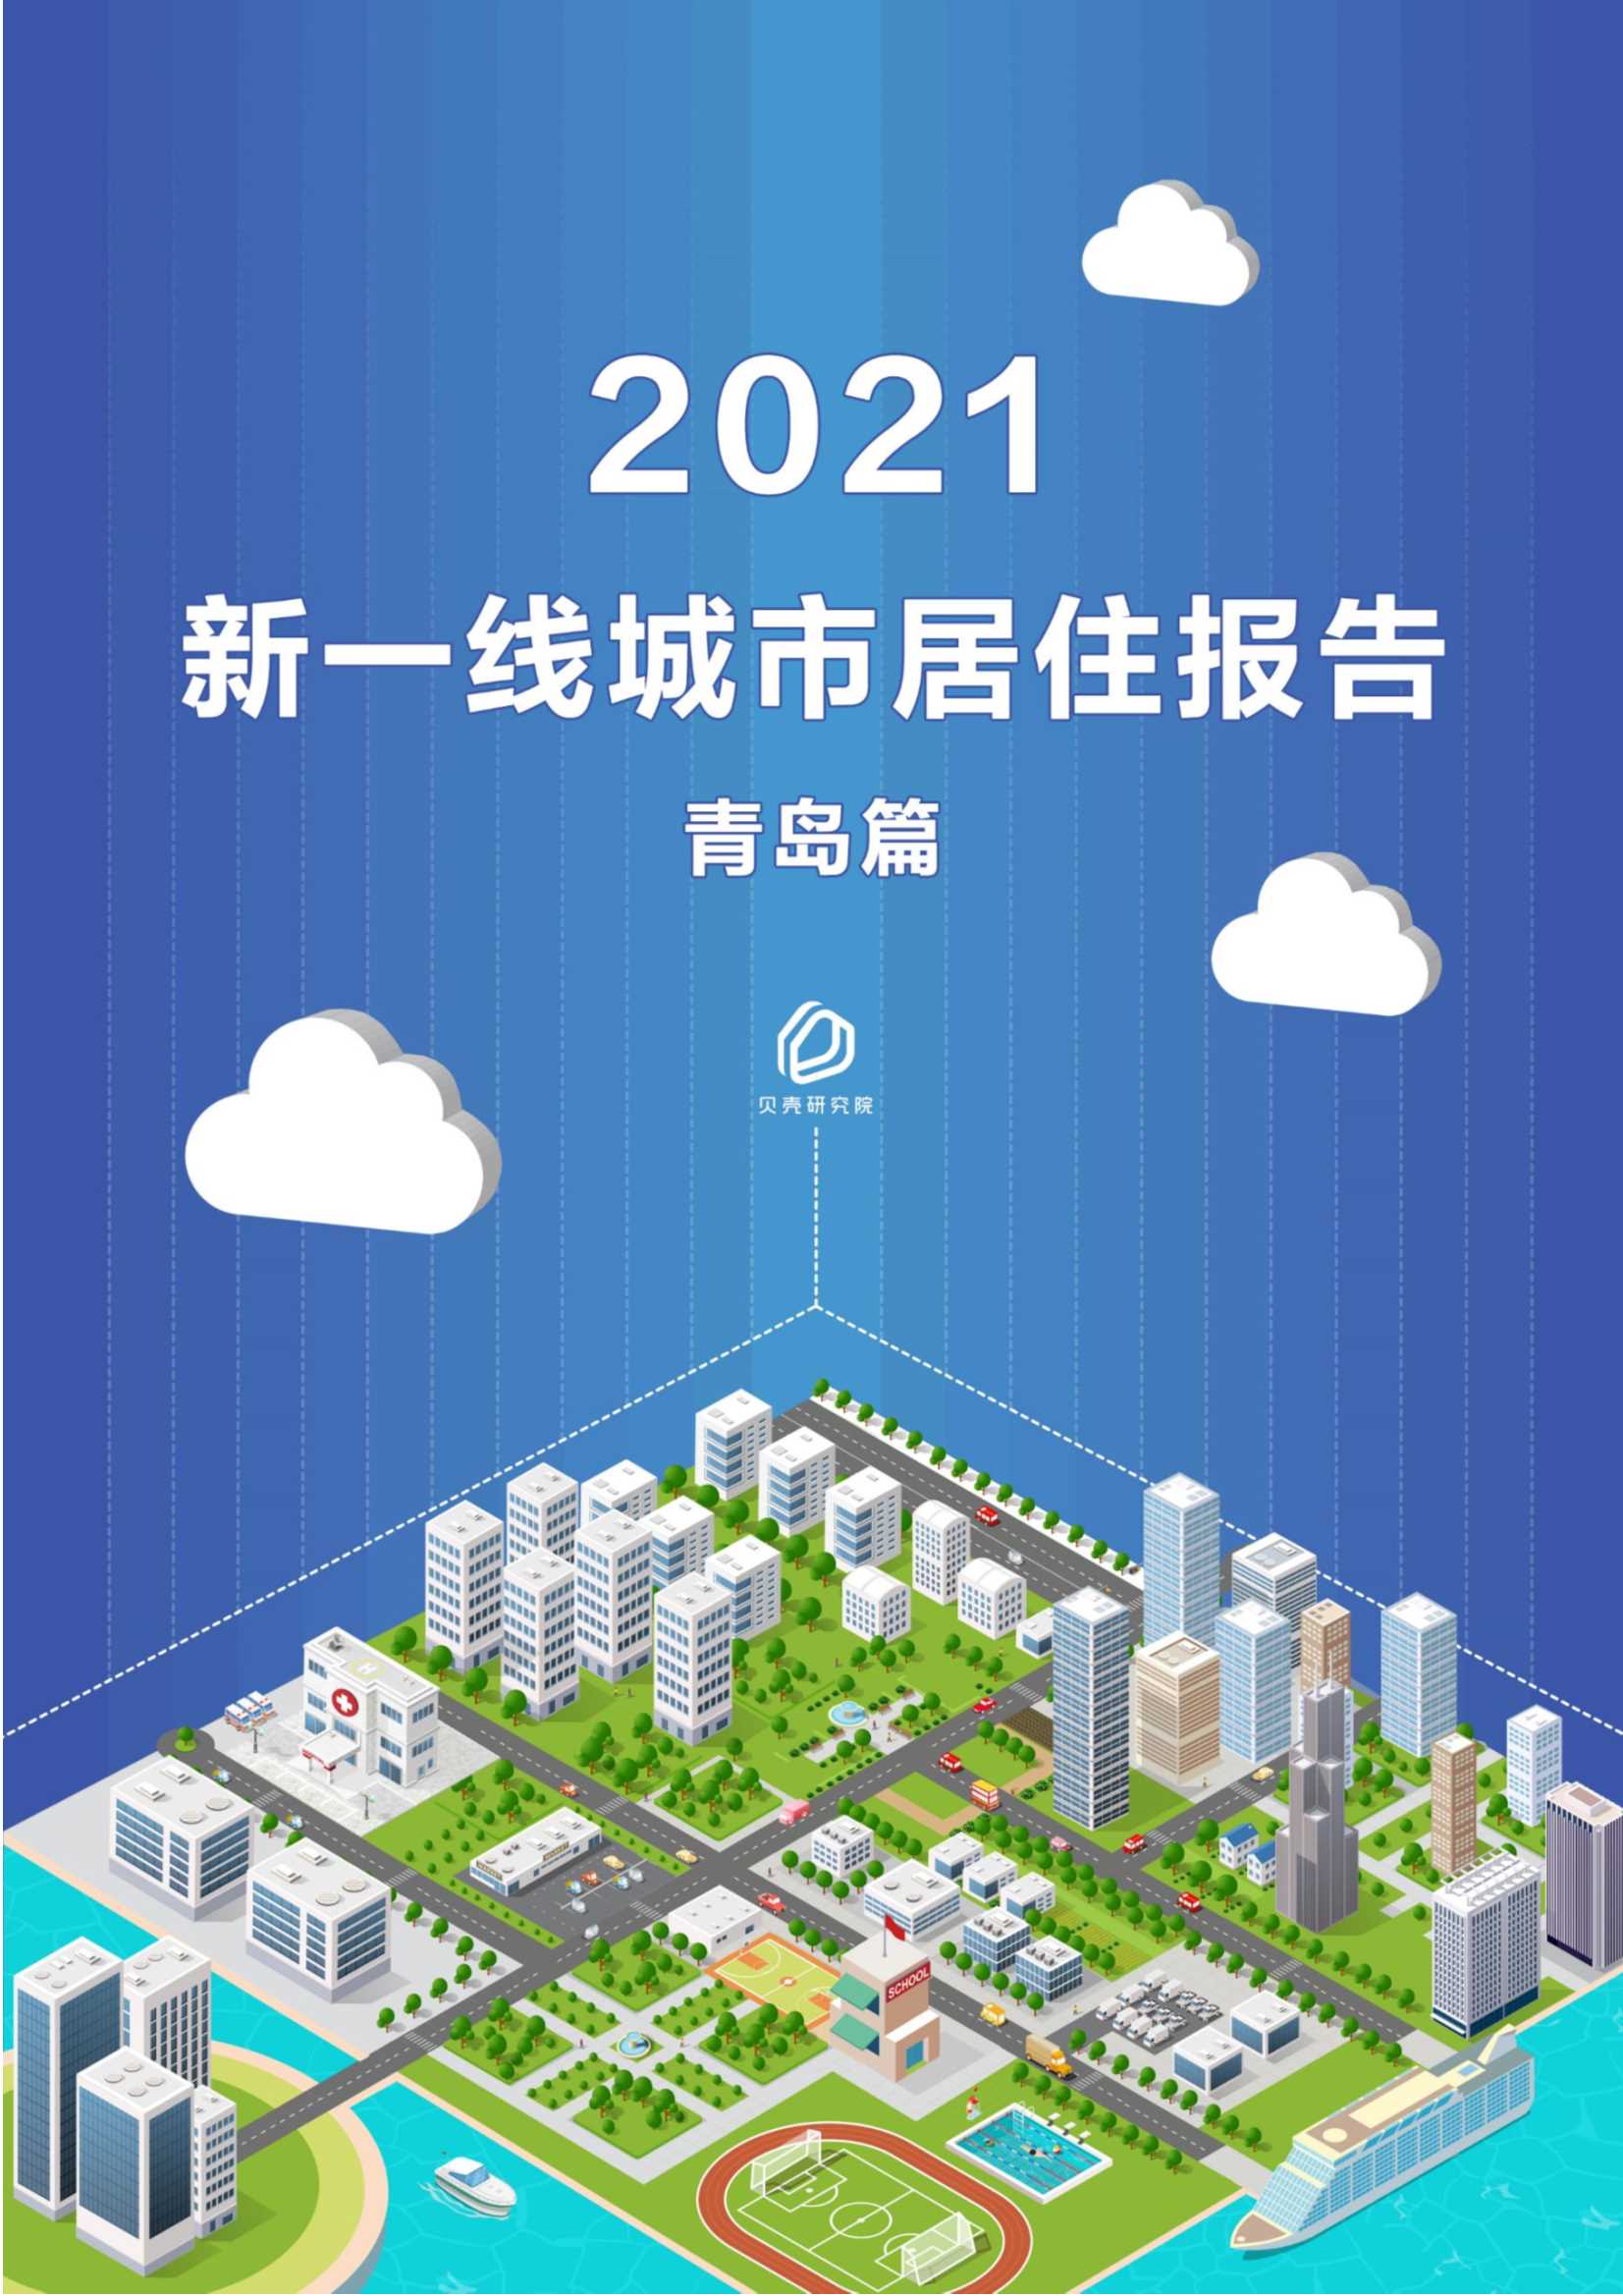 贝壳研究院-新一线城市居住报告青岛篇-2021.05-21页